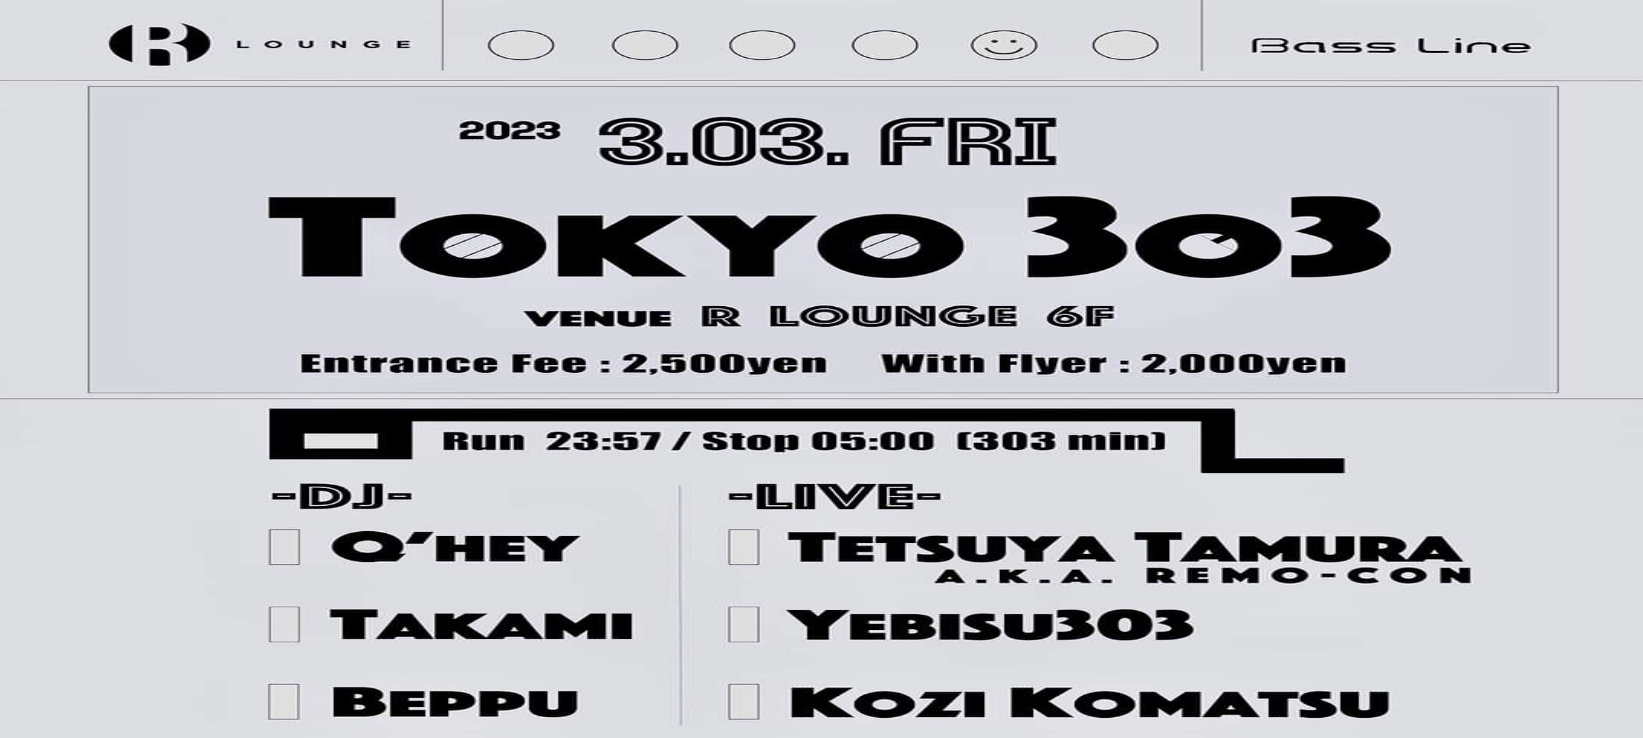 TB-303」の日を記念する303分間限定イベント「Tokyo 3o3」が開催決定 